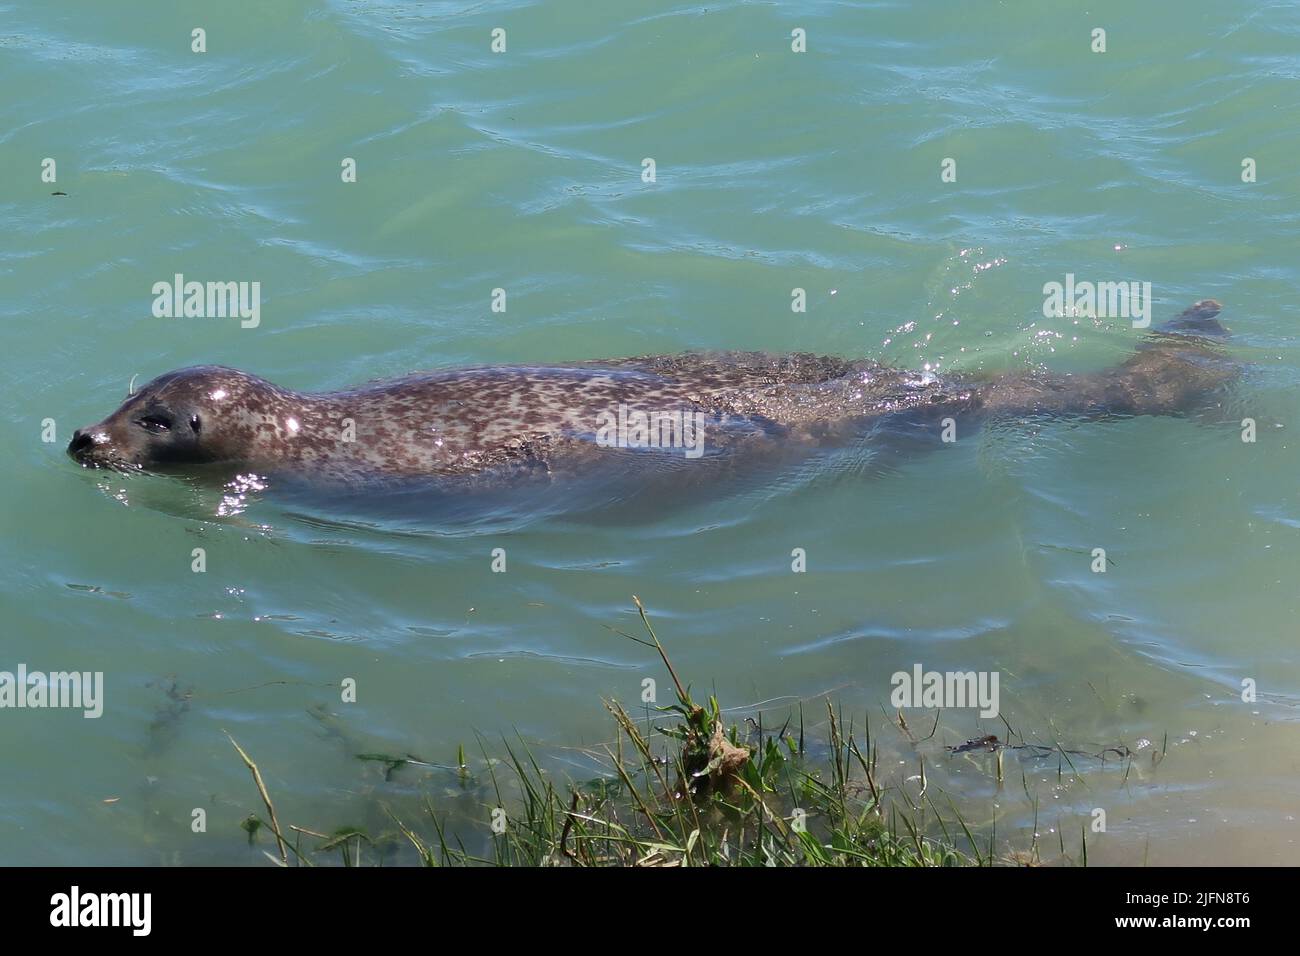 Un grand phoque gris tourbillonne dans la rivière Arun, West Sussex, Royaume-Uni. Emplacement inhabituel à 3 miles à l'intérieur des terres de la mer, mais bien connu localement depuis plusieurs années. Banque D'Images